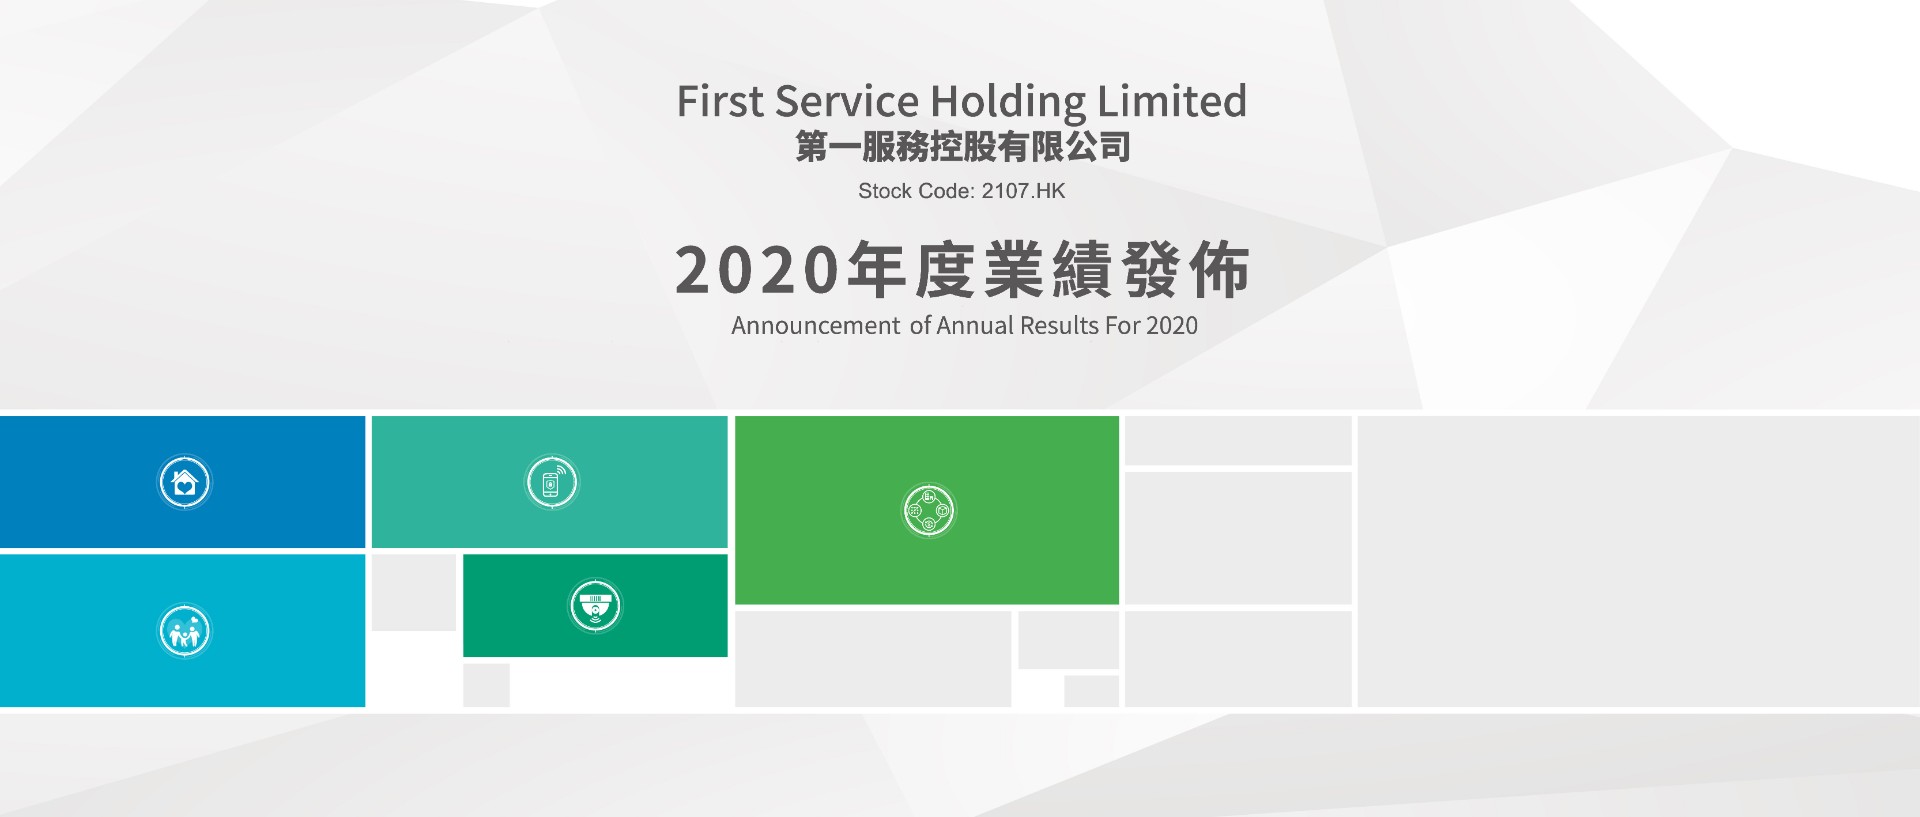 拓展速增、科技赋能、 增长可期 第一服务控股(2107.HK) 2020年业绩发布